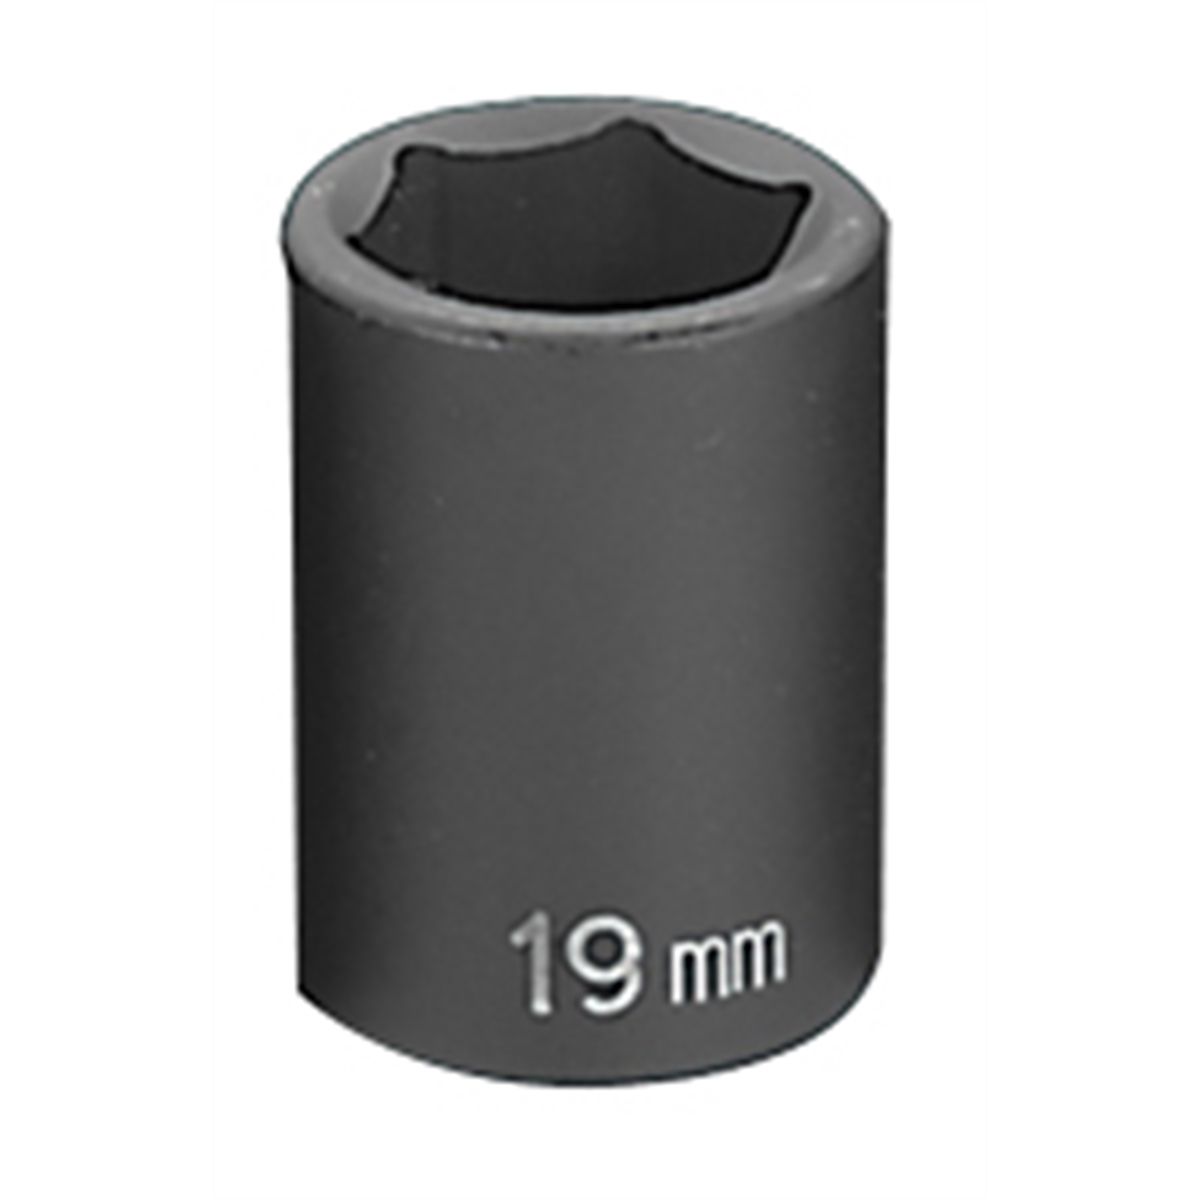 1/2" Drive x 19mm Standard Impact Socket